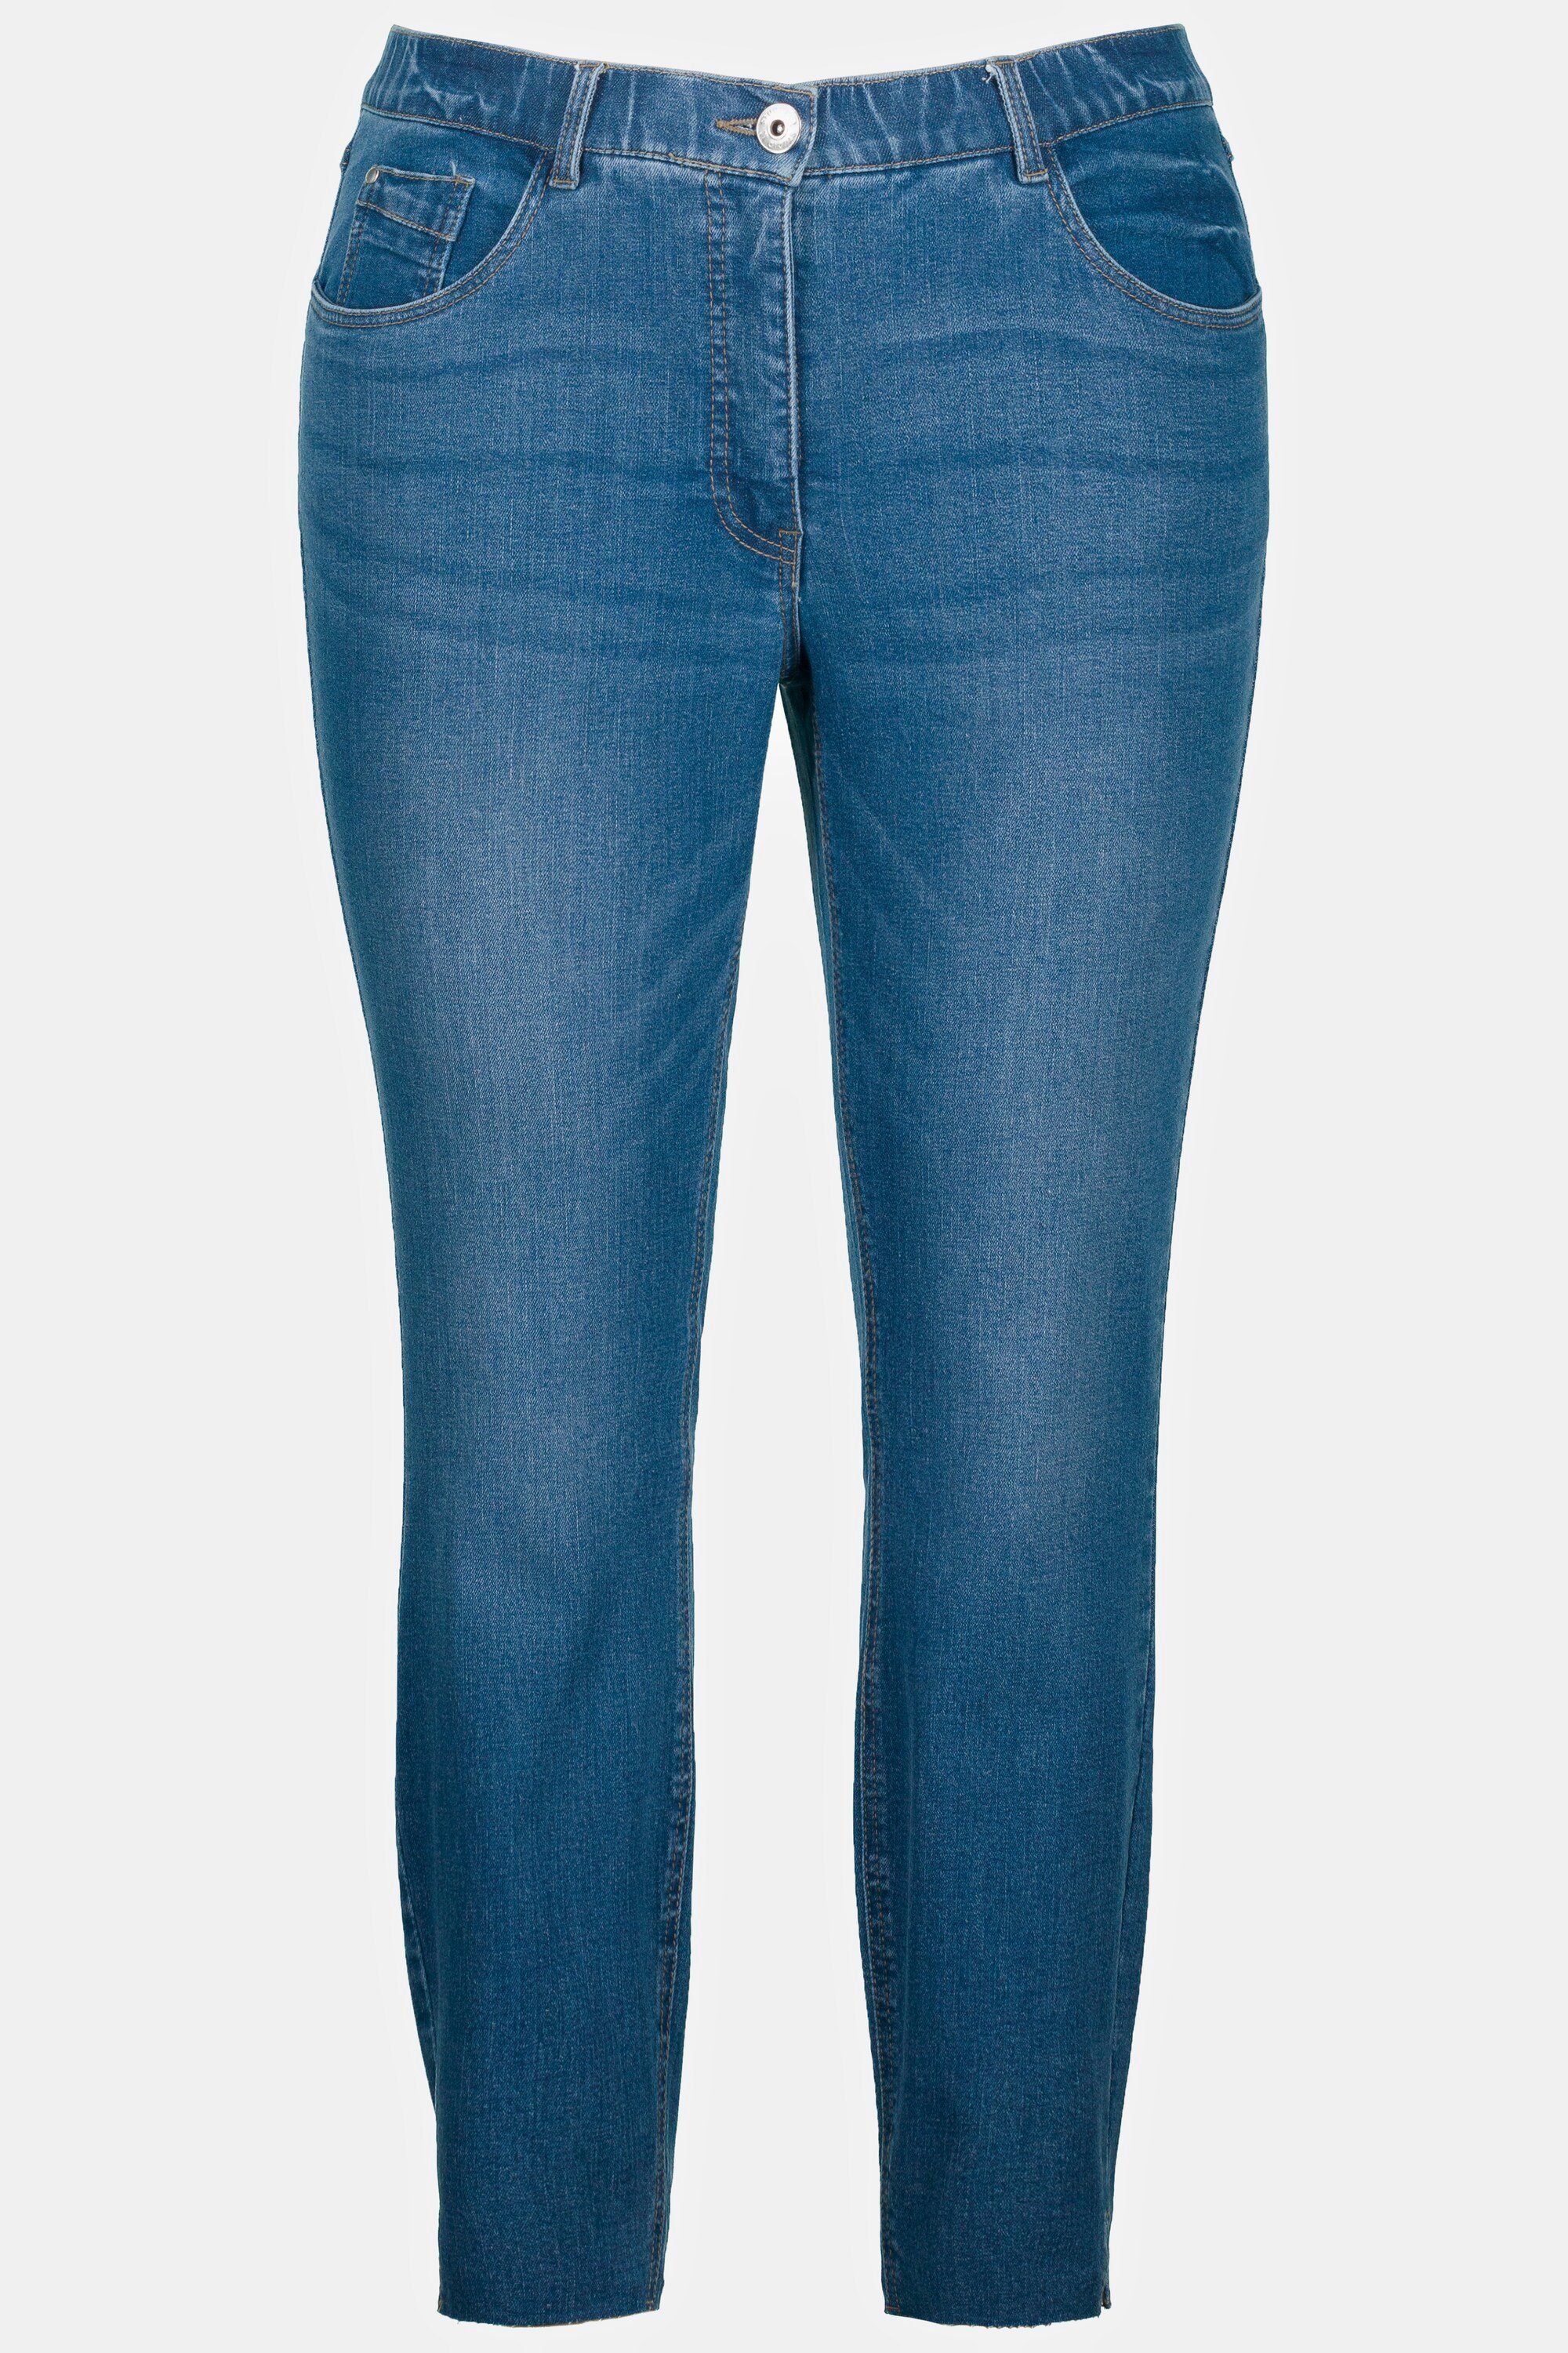 Studio Untold Schlupfhose 5-Pocket Schlitz blue Jeans schmal Fransensaum Skinny denim